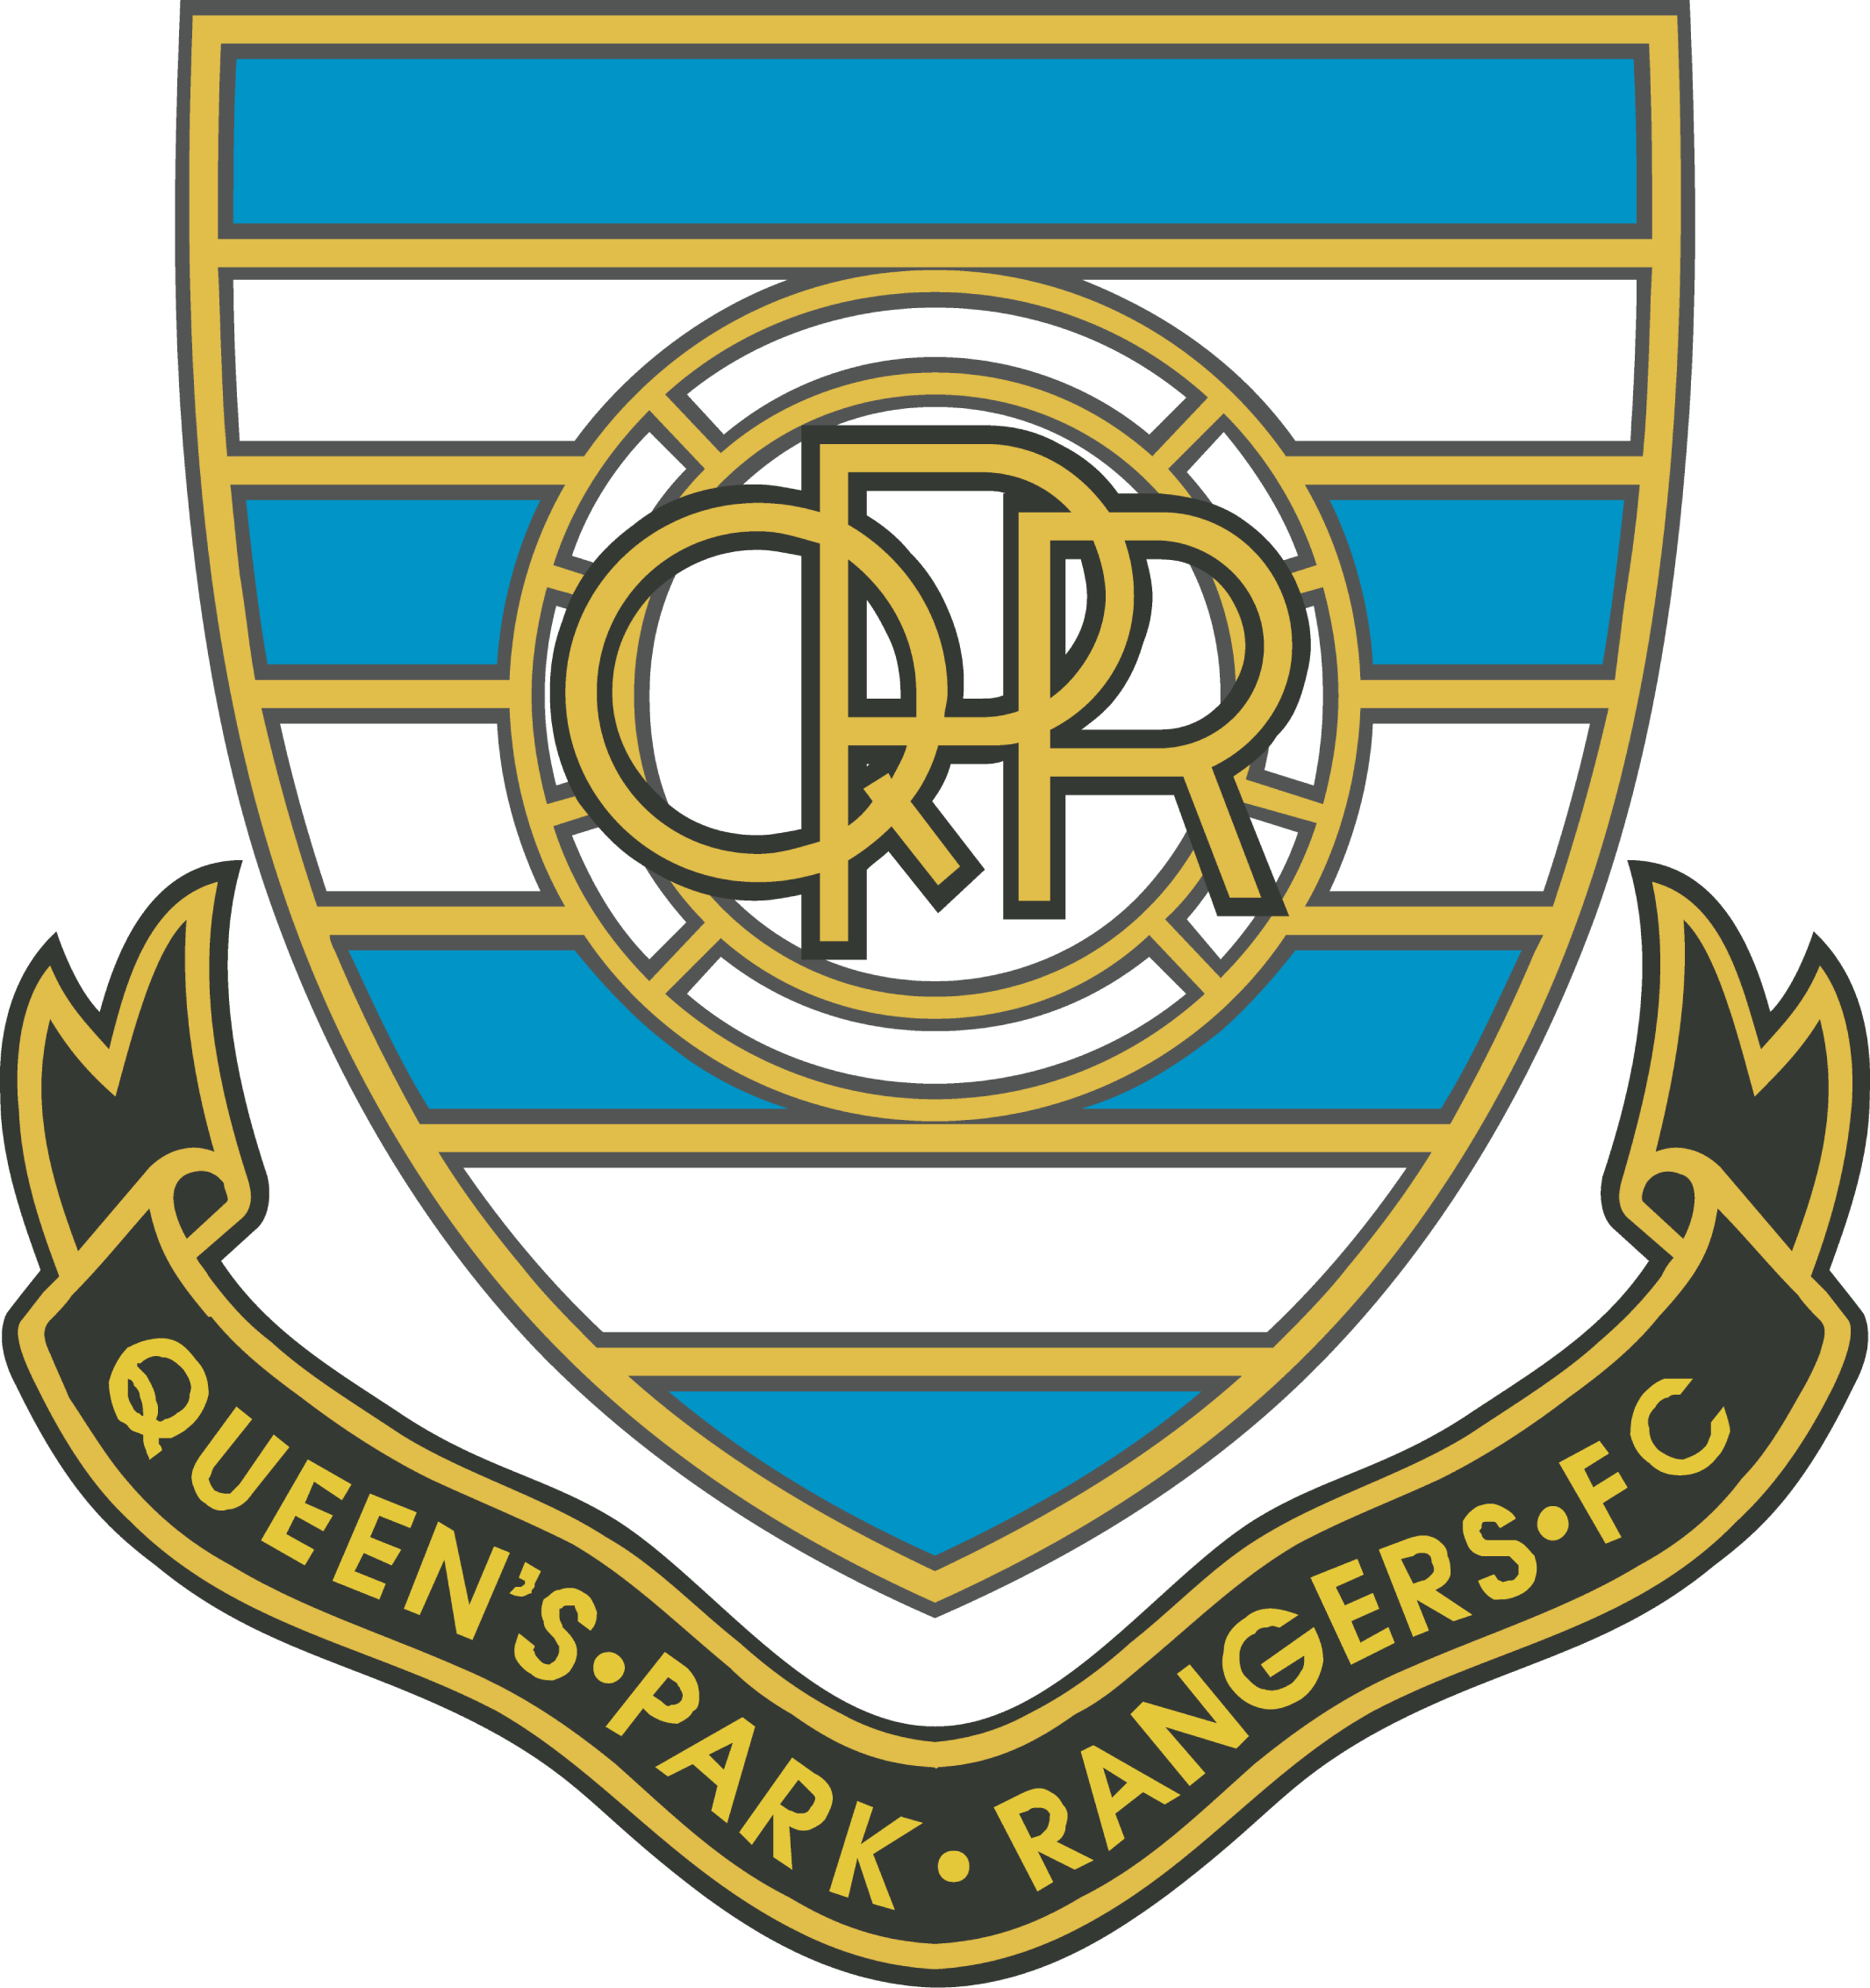 Queens Park Rangers Fc - Queens Park Rangers F.c. (2131x2265)